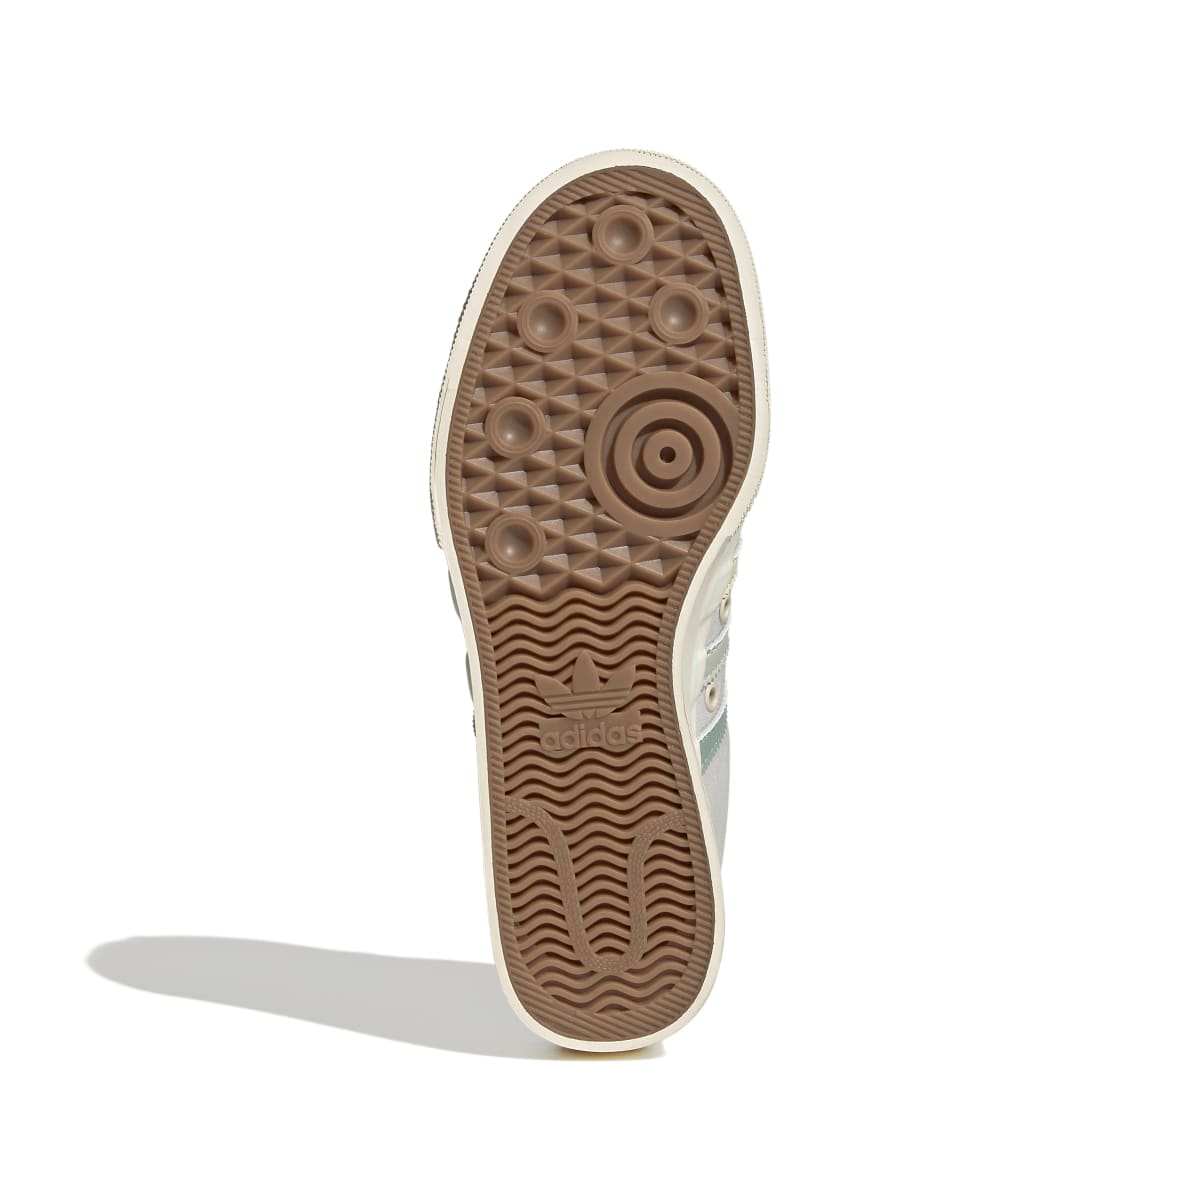 ADIDAS GX4605 NIZZA PLATFORM WMN`S (Medium) White/Lime/White Textile Lifestyle Shoes